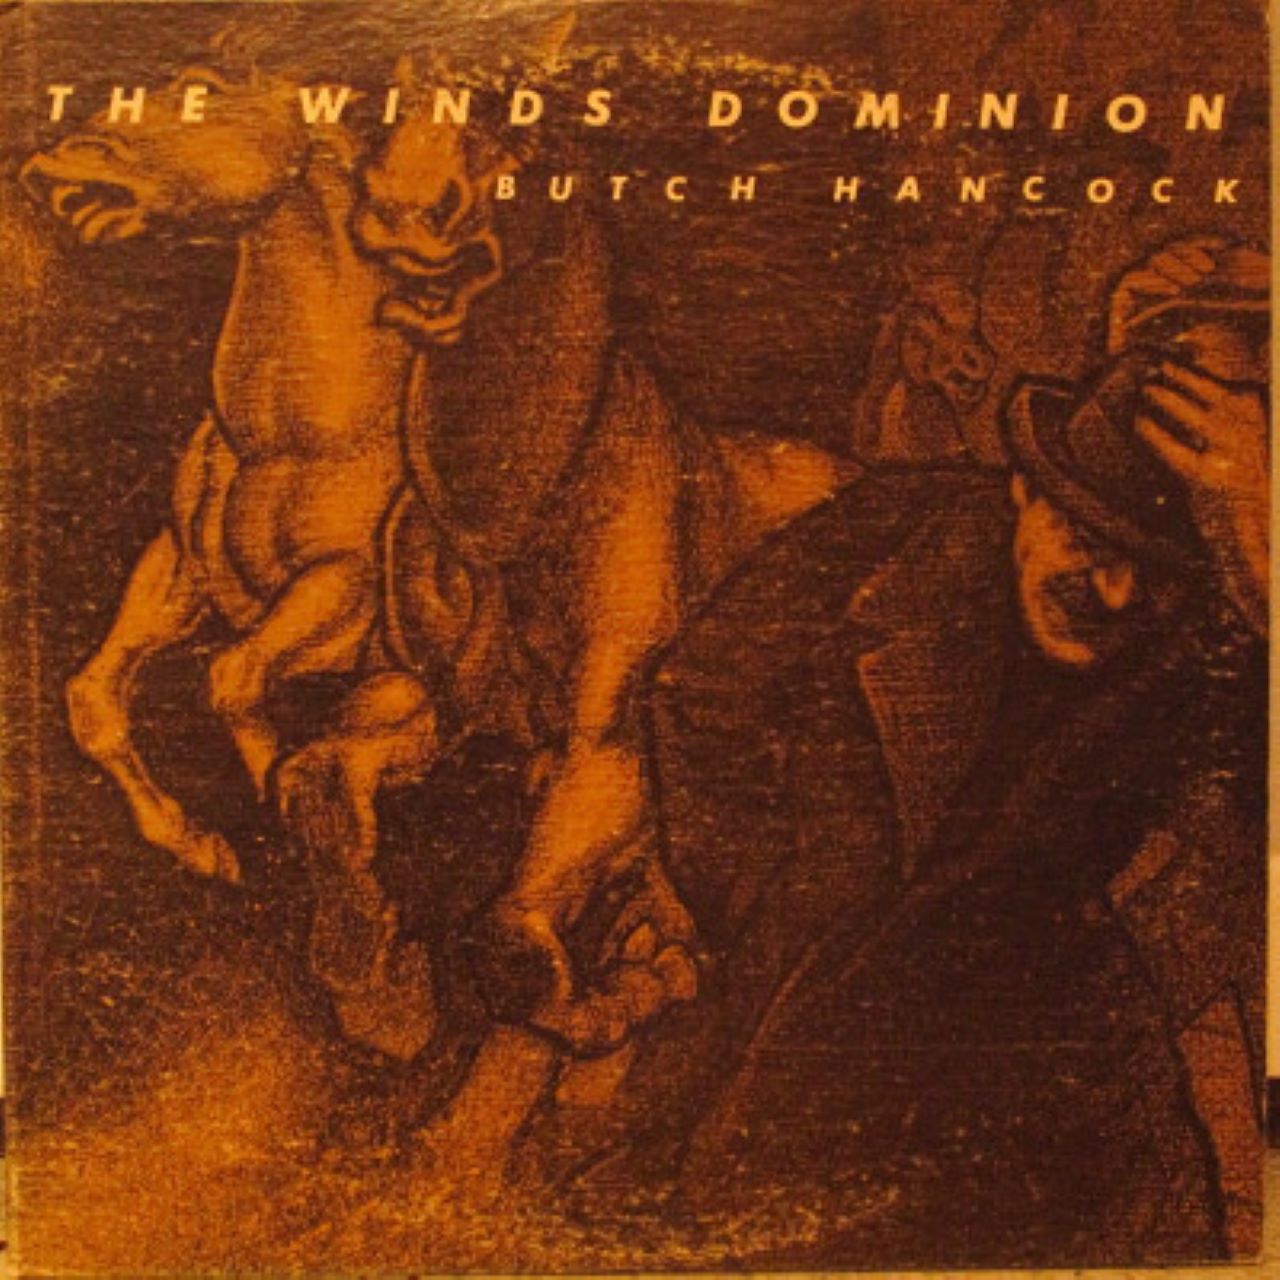 Butch Hancock - The Wind's Dominion cover album